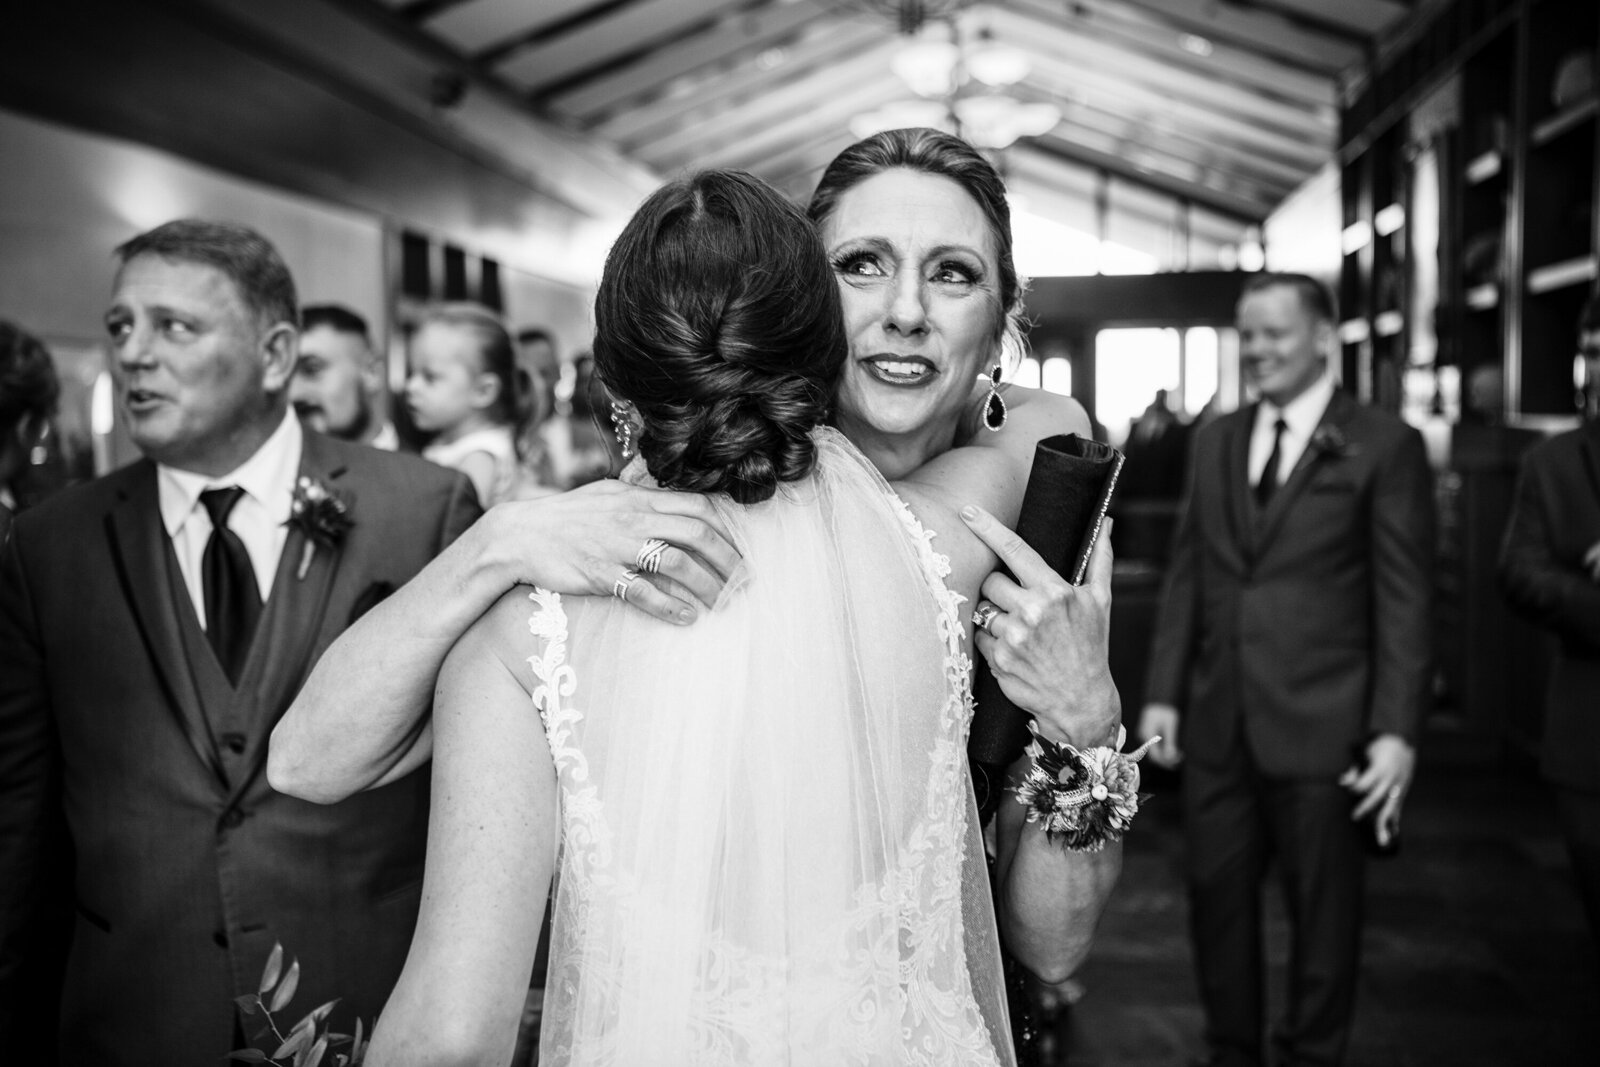 Mom hugs bride after wedding ceremony